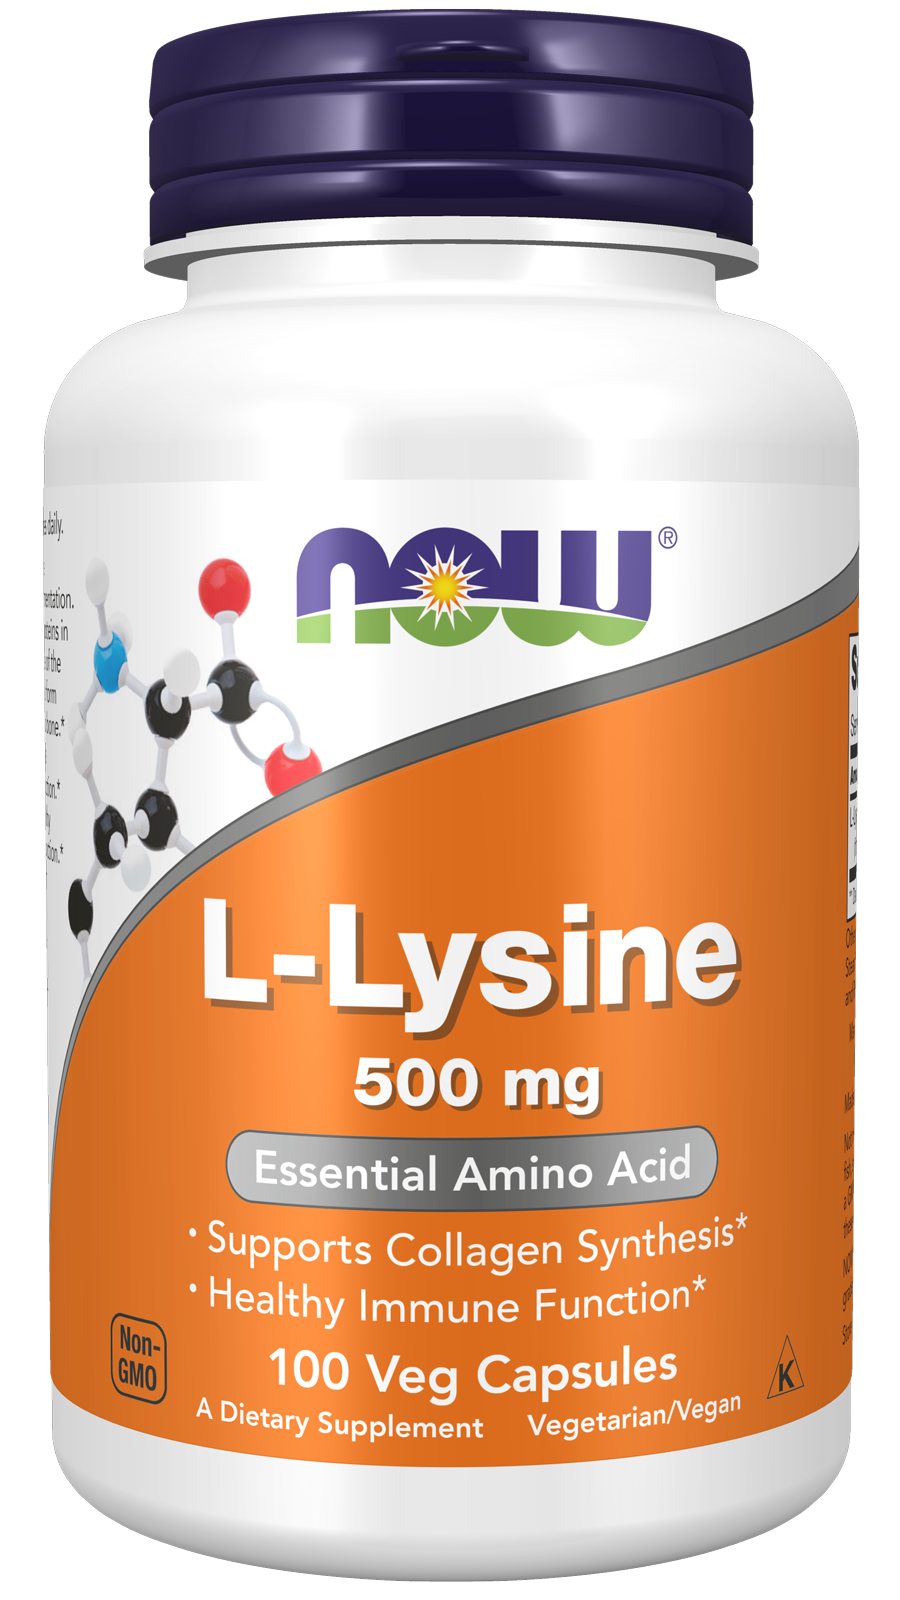 L-Lysine 500 mg - 100 Veg Capsules Bottle Front